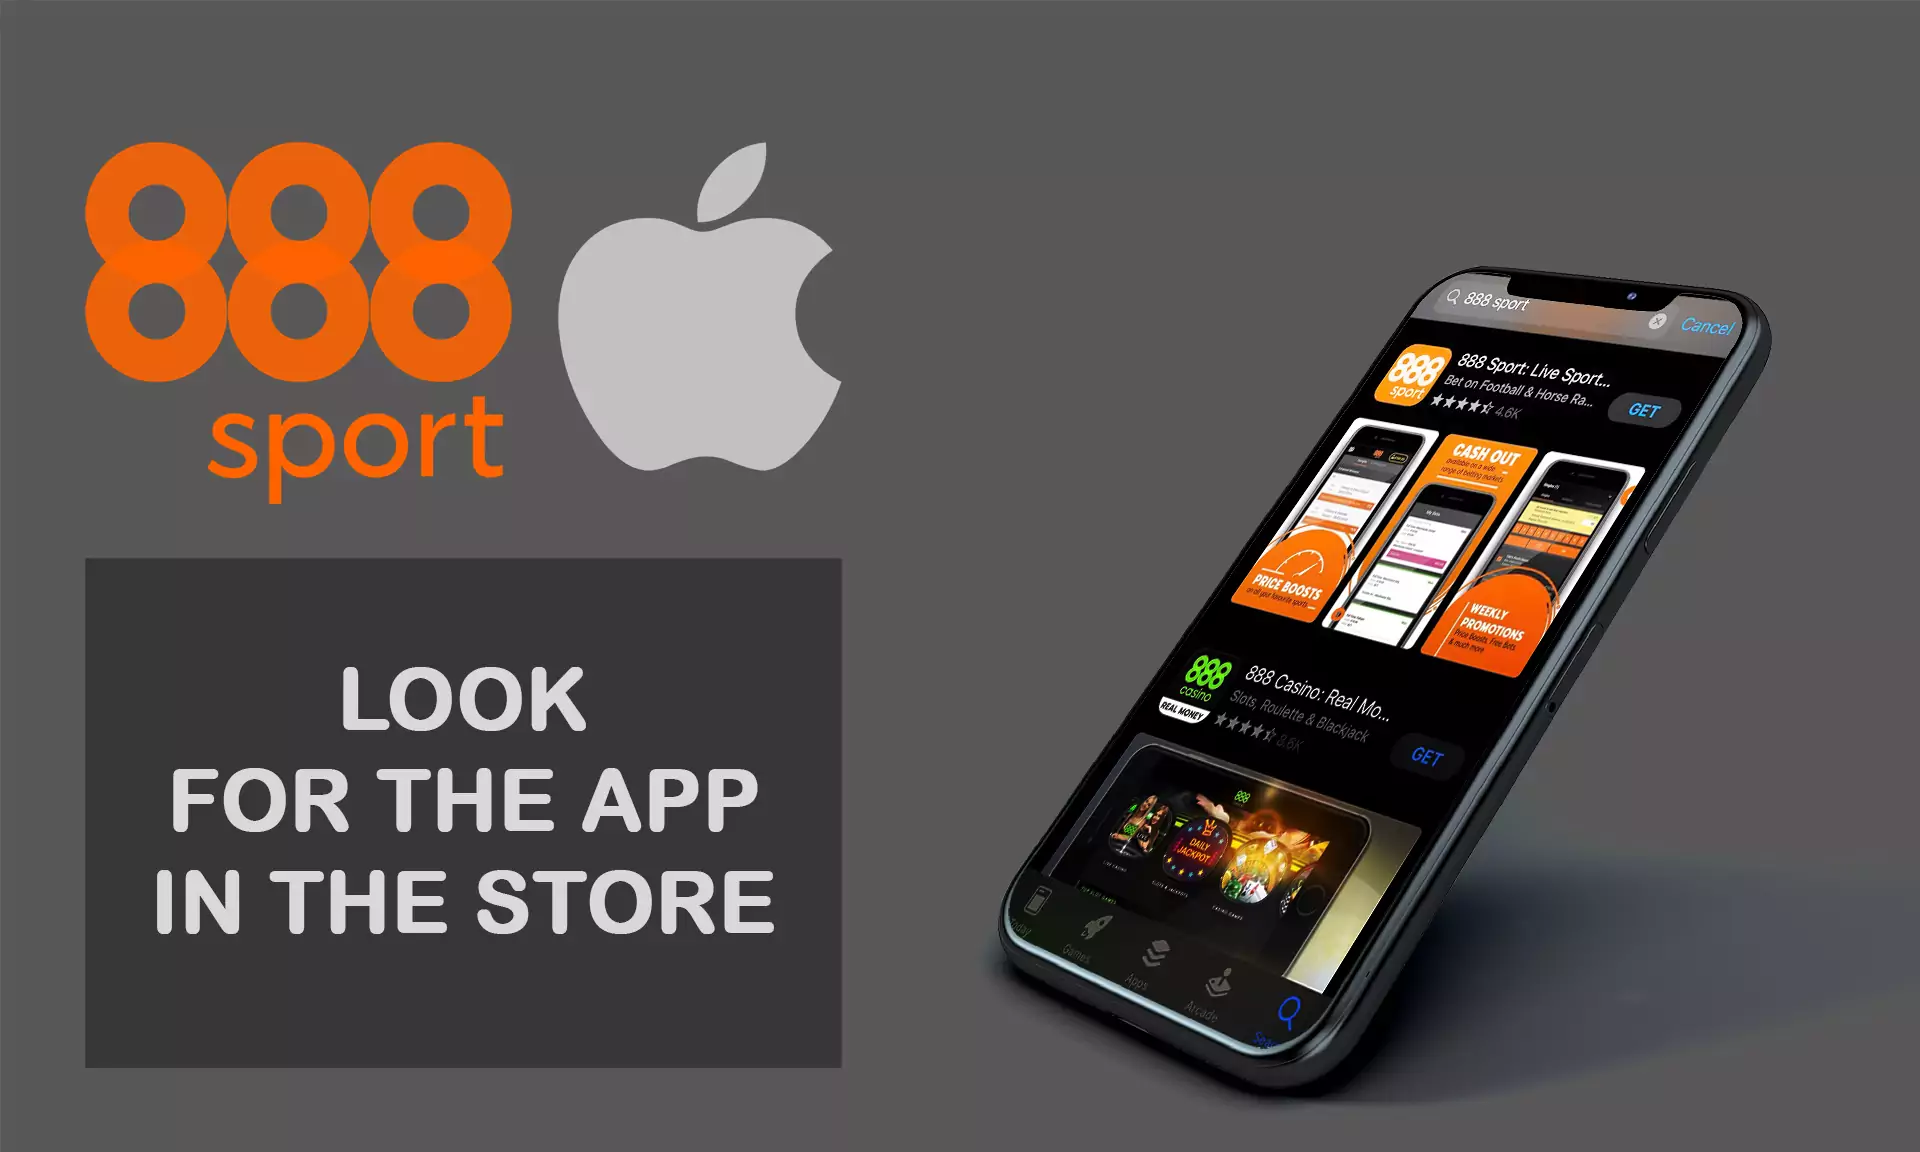 के लिए देखो 888Sport सट्टेबाजी अनुप्रयोग AppStore में।